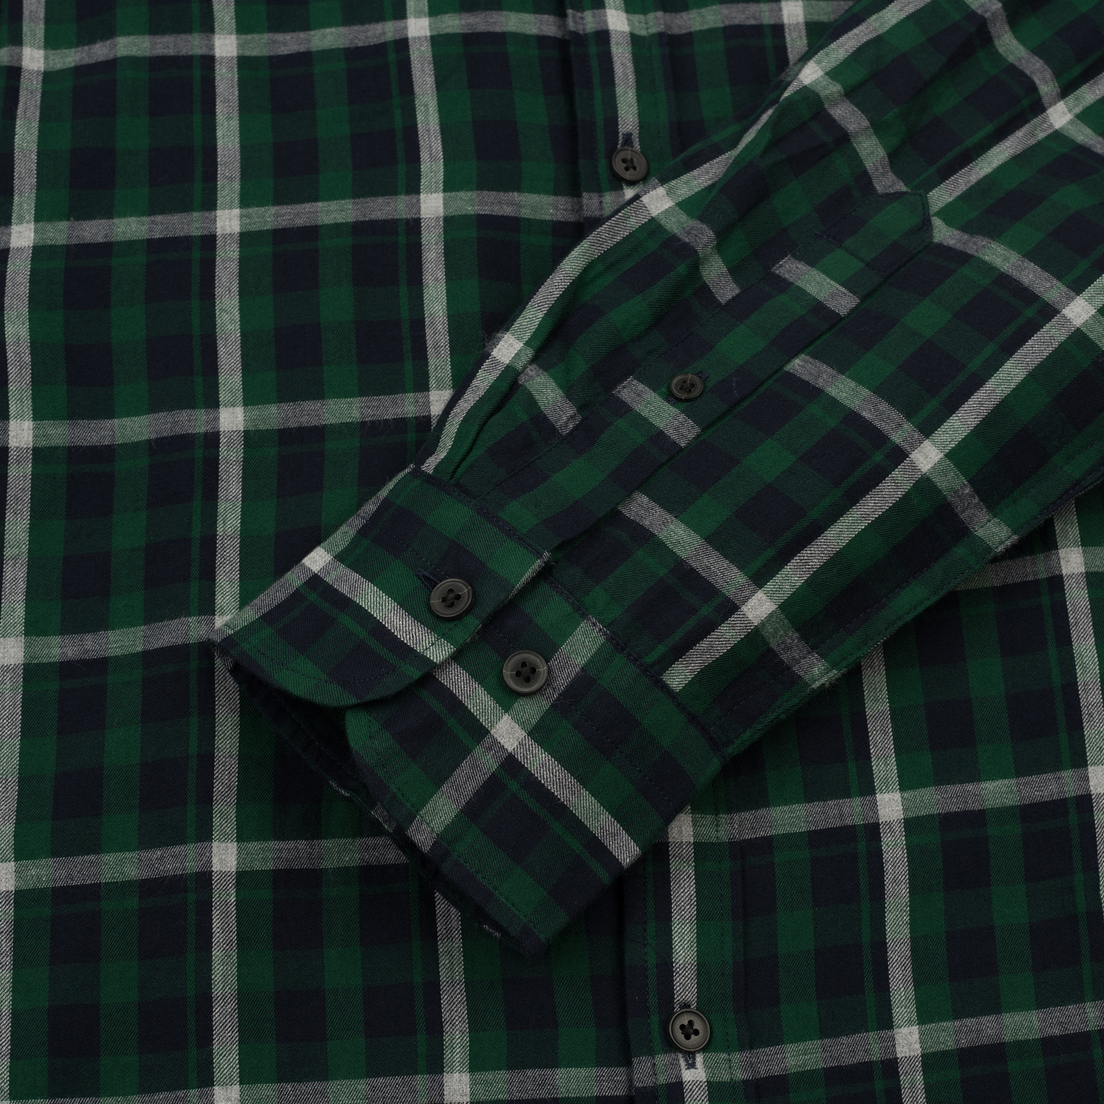 Gant Мужская рубашка Original Nordic Plaid Regular Fit BD